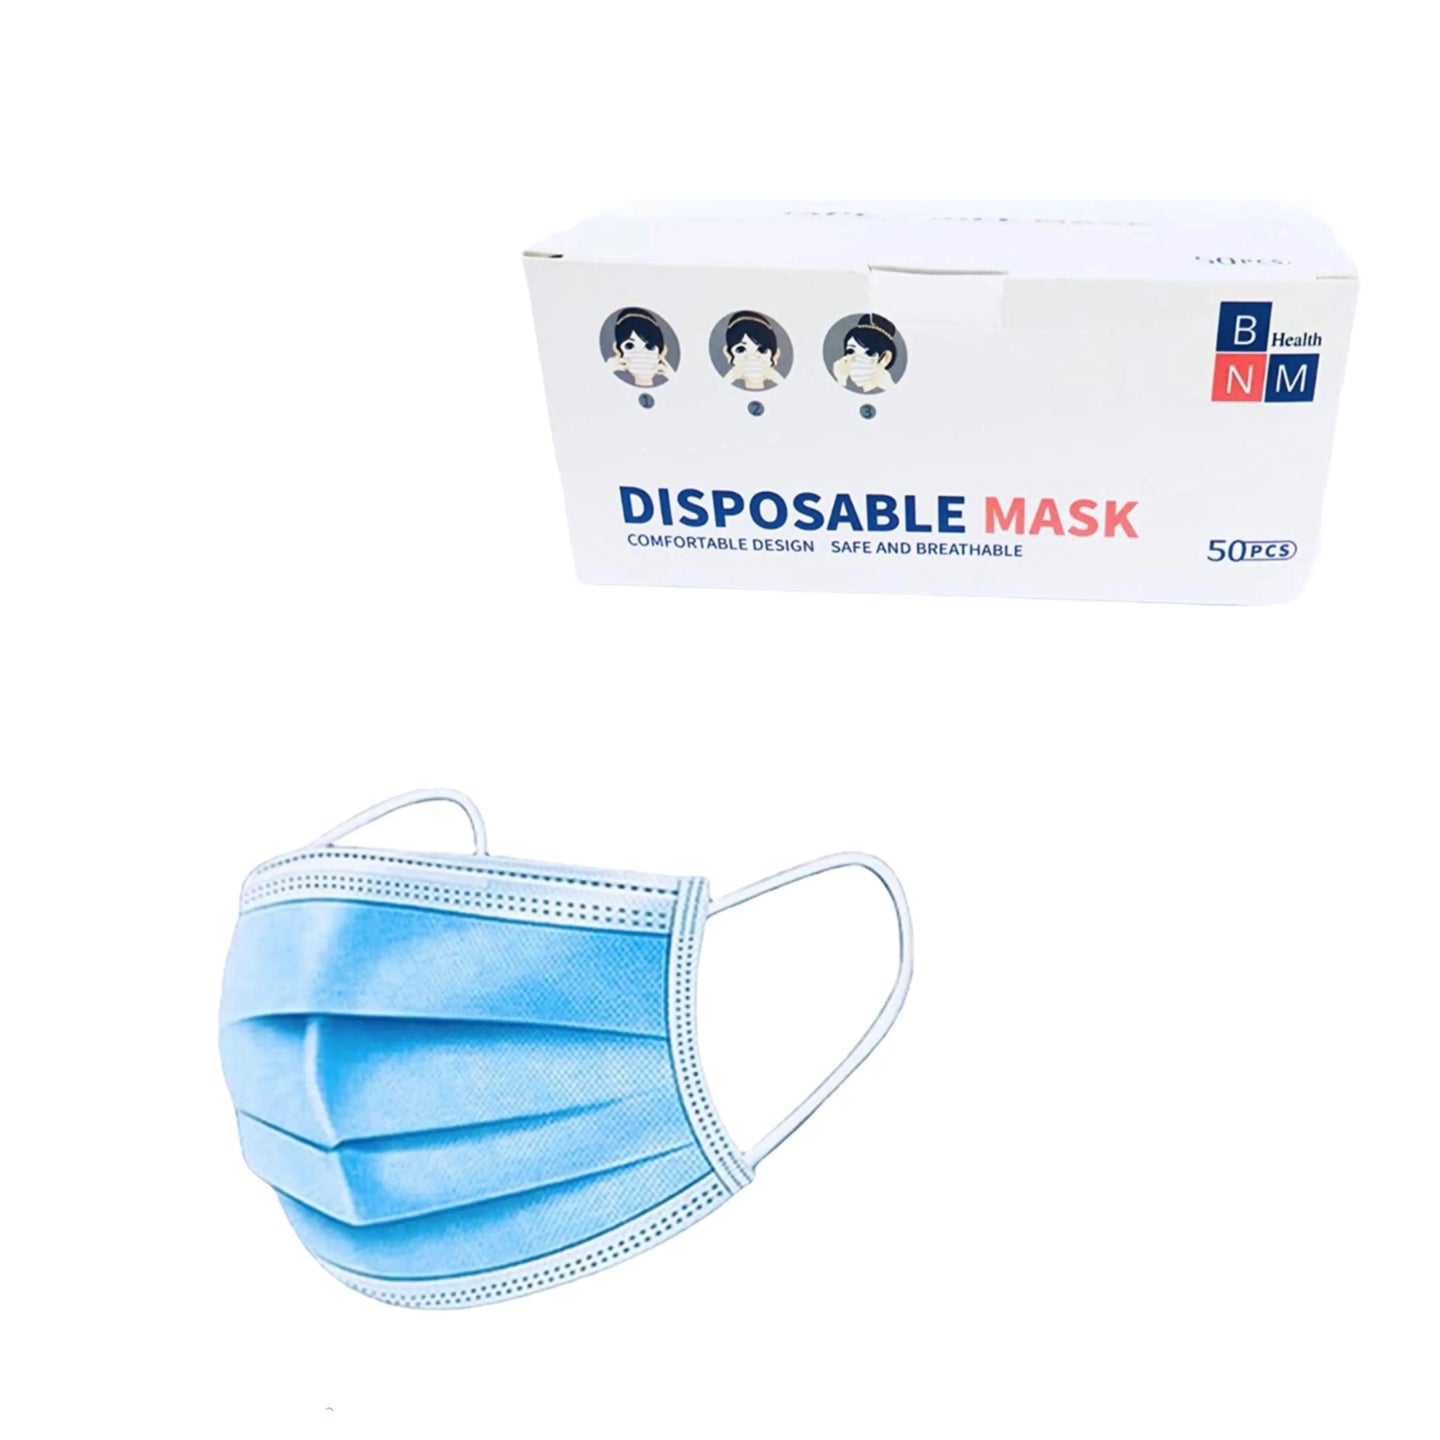 Adult 50 pcs disposable face masks